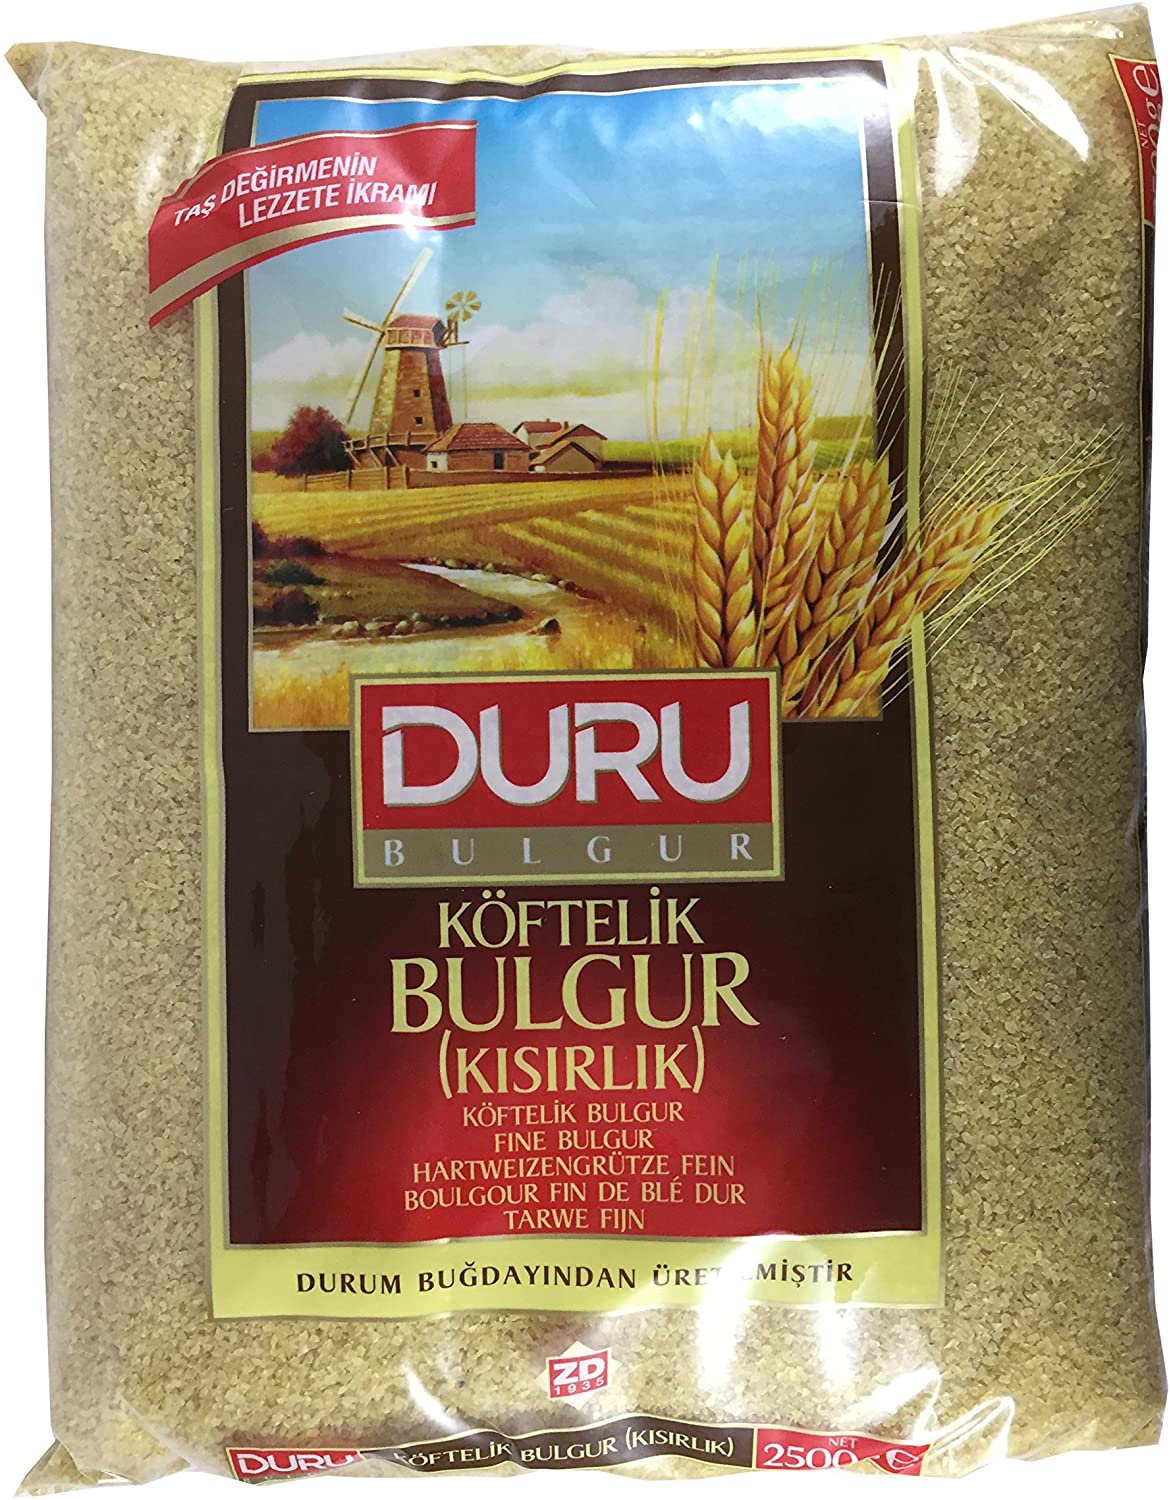 Duru Fine Bulgur by Duru Bulgur 2500g Koftelik Kisirlik Bulgur UK - Turkishzone